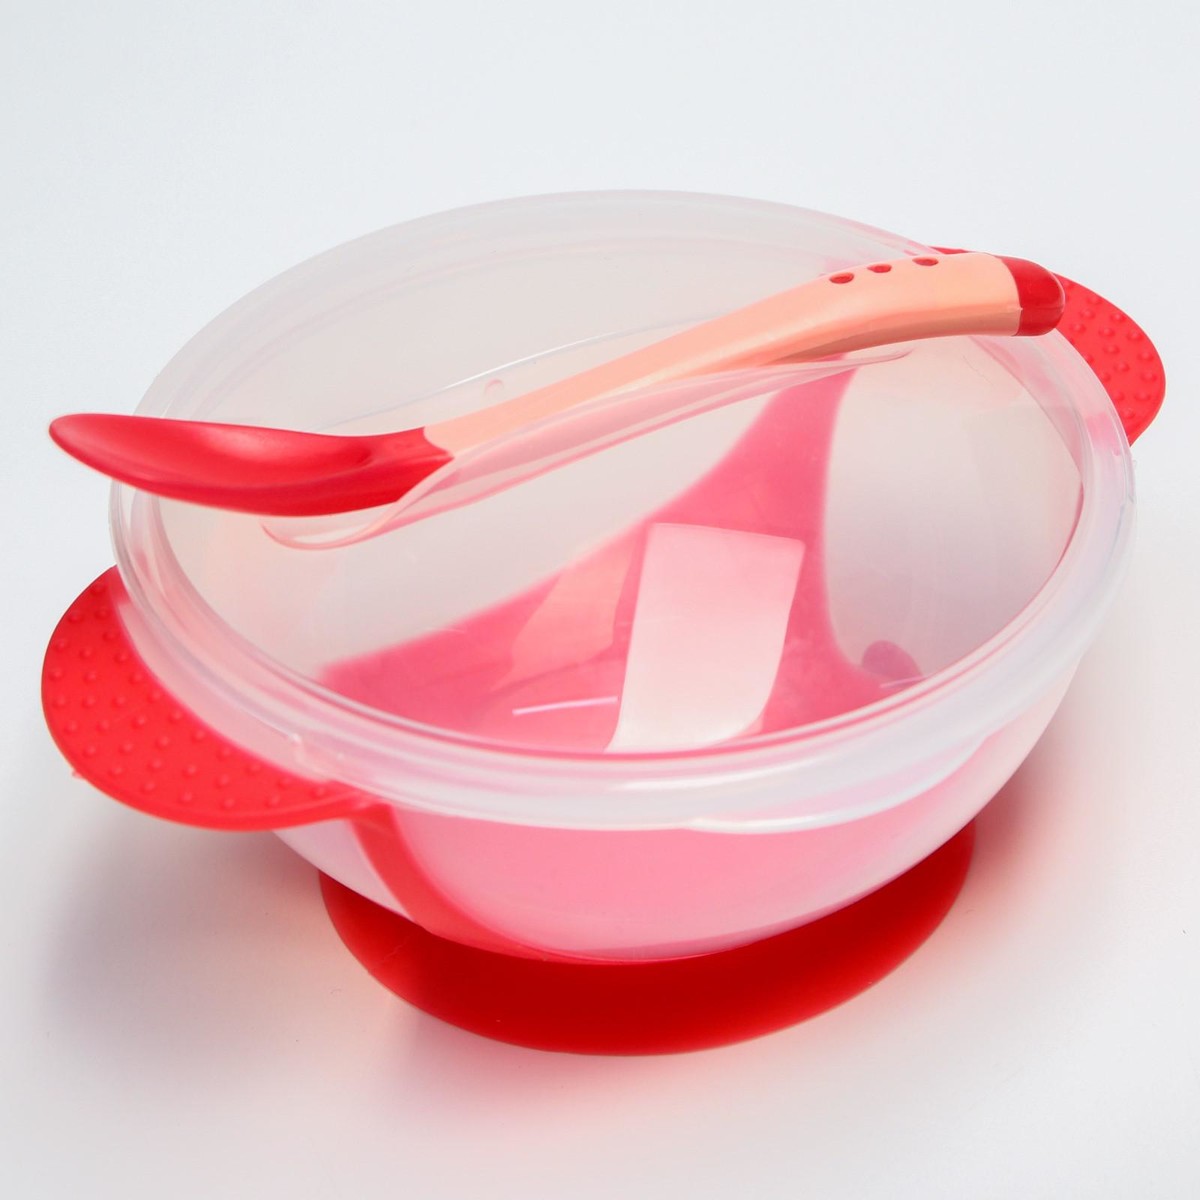 Набор для кормления: миска на присоске 340 мл., с крышкой, термоложка, цвет красно-бежевый набор для кормления нагрудник тарелка на присоске ложка m